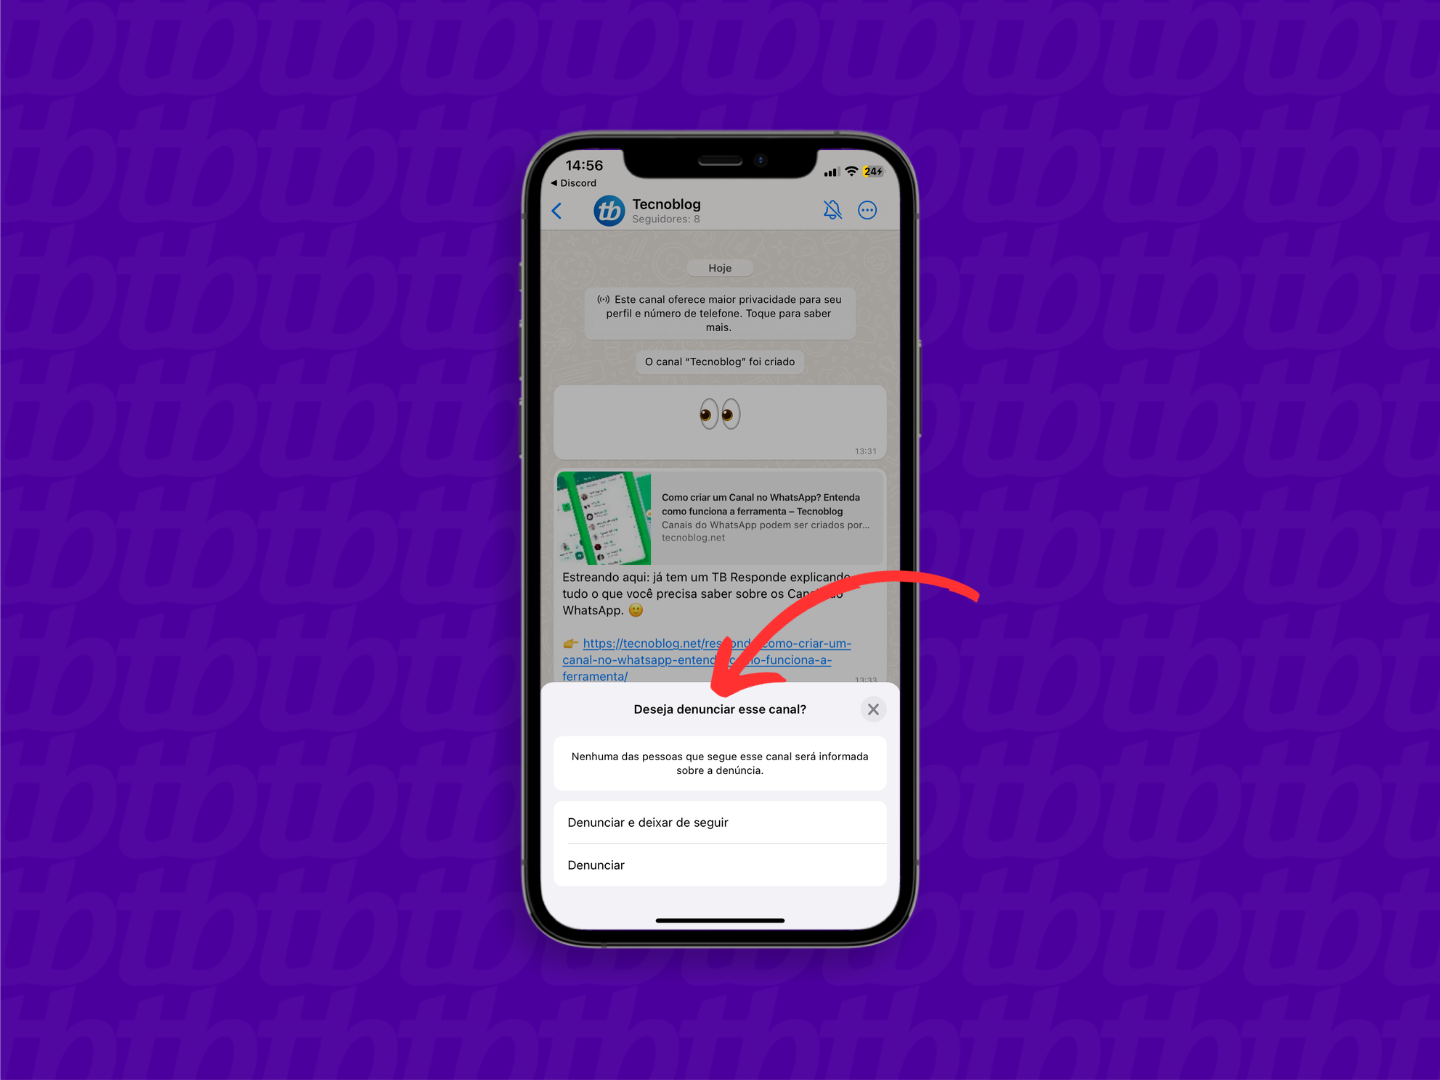 Mockup de iPhone com print de tela de WhatsApp que mostra o novo canal do tecnoblog. Uma seta indica a tela de confirmação de denúncia, localizada na parte inferior da tela.